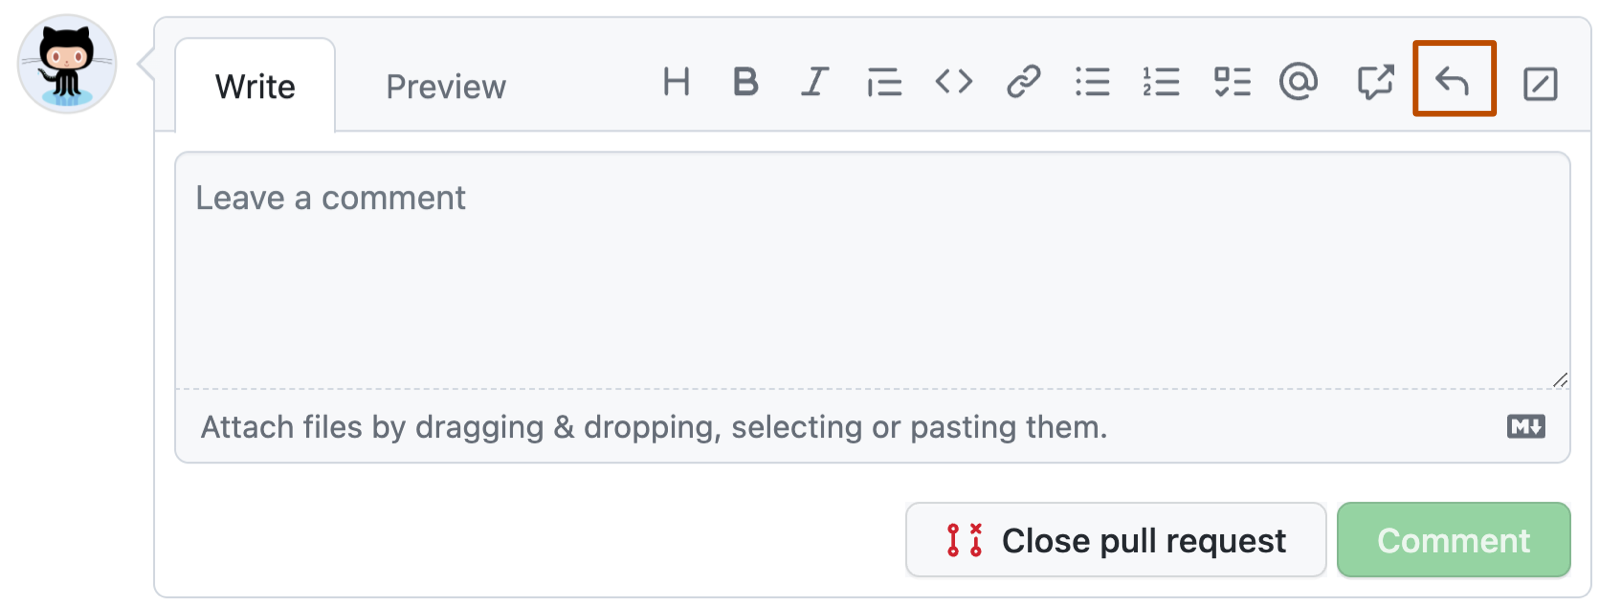 GitHub コメント ボックスのスクリーンショット。 ツール バーで、左向きの矢印が付いた返信ボタンが濃いオレンジ色の枠線で囲まれています。